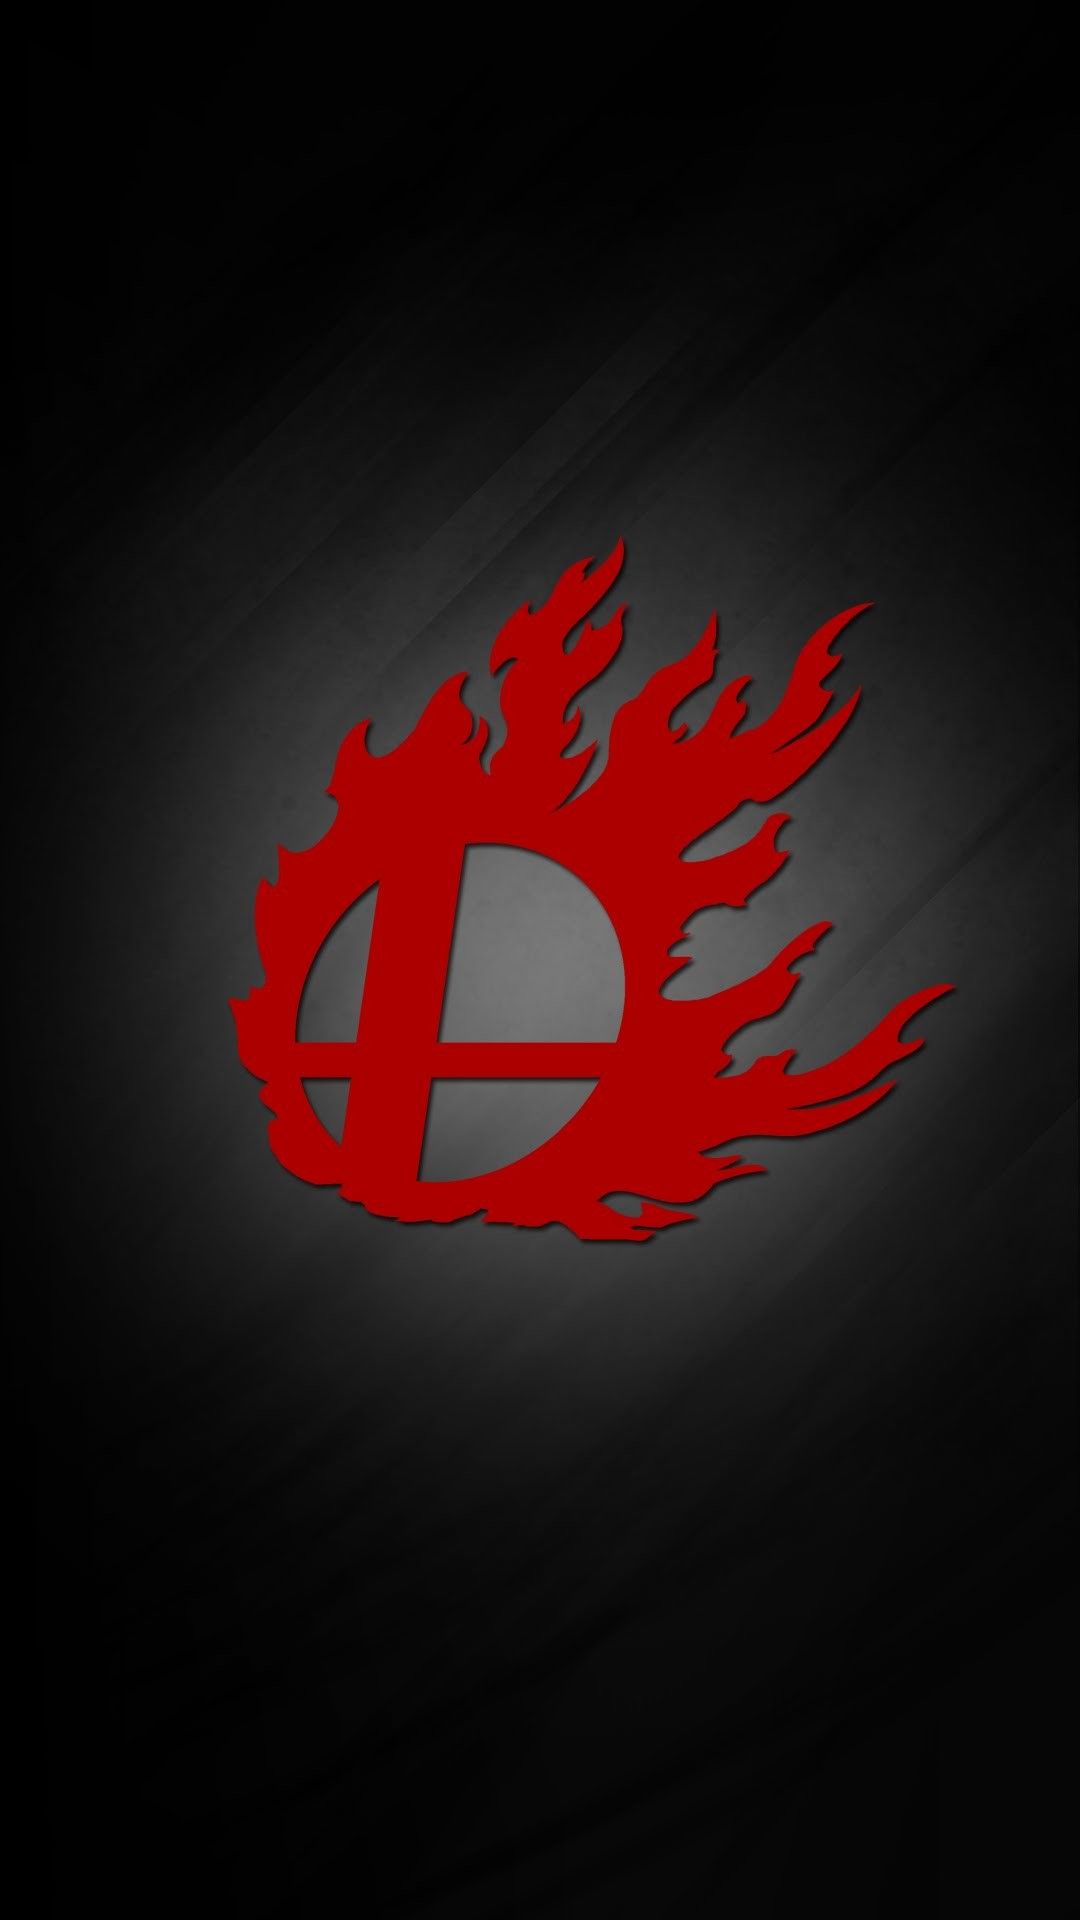 Smash Bros Fire Logo Wallpaper